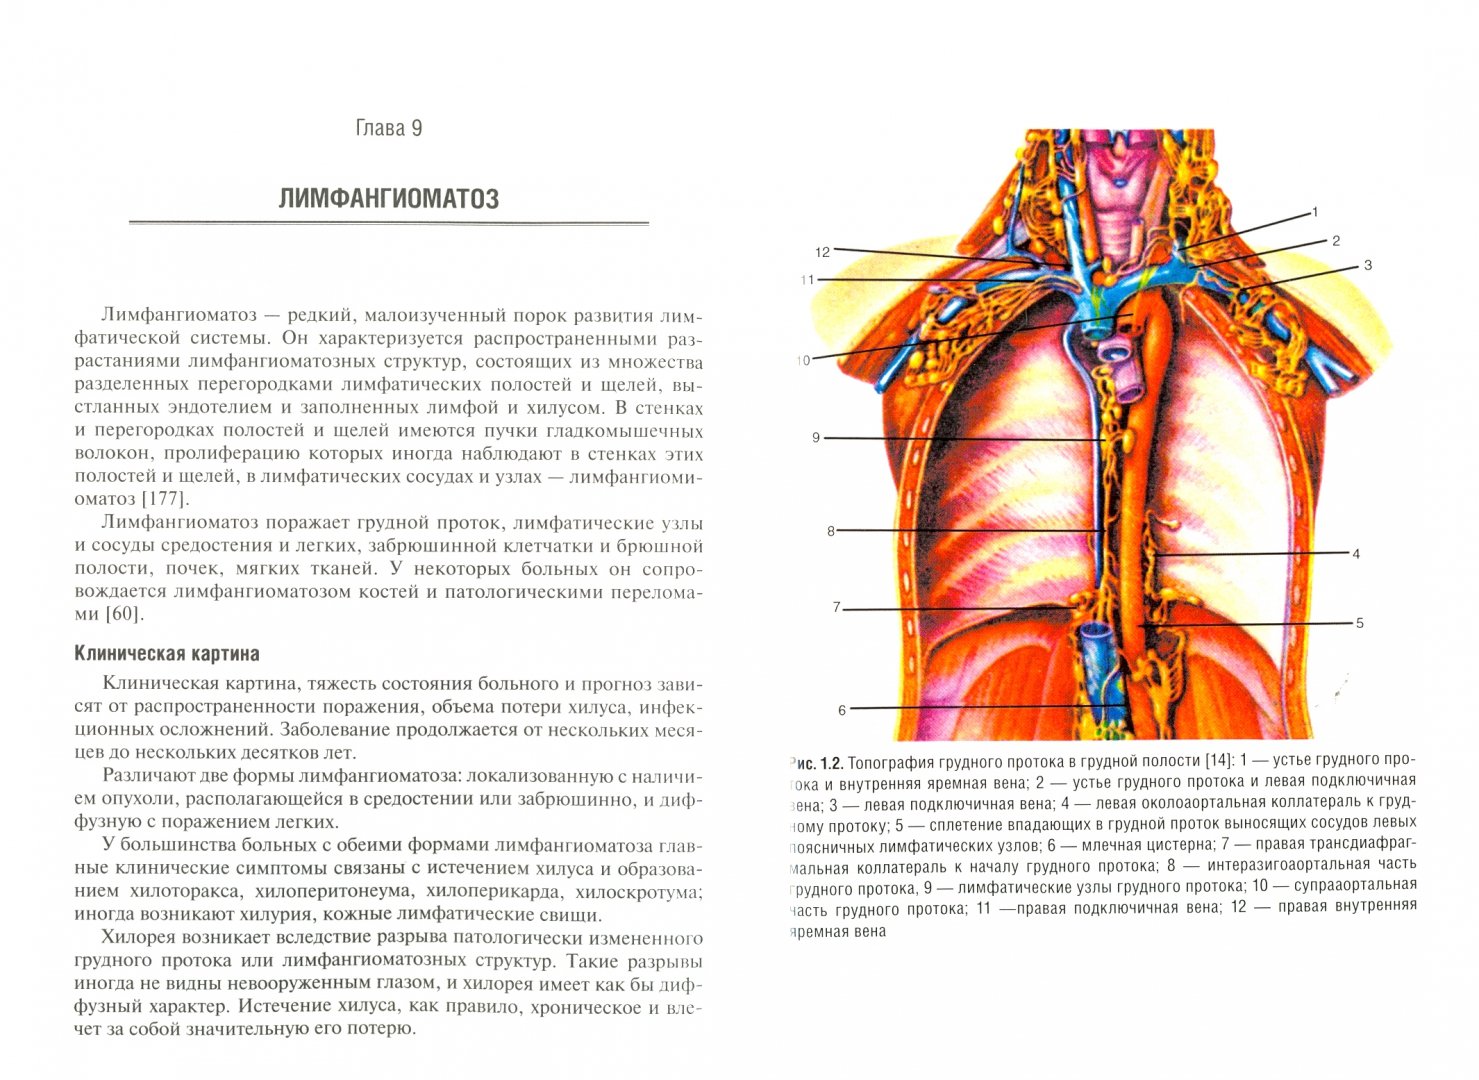 Иллюстрация 1 из 6 для Хирургия грудного протока. Монография - Паршин, Седова, Самохин | Лабиринт - книги. Источник: Лабиринт